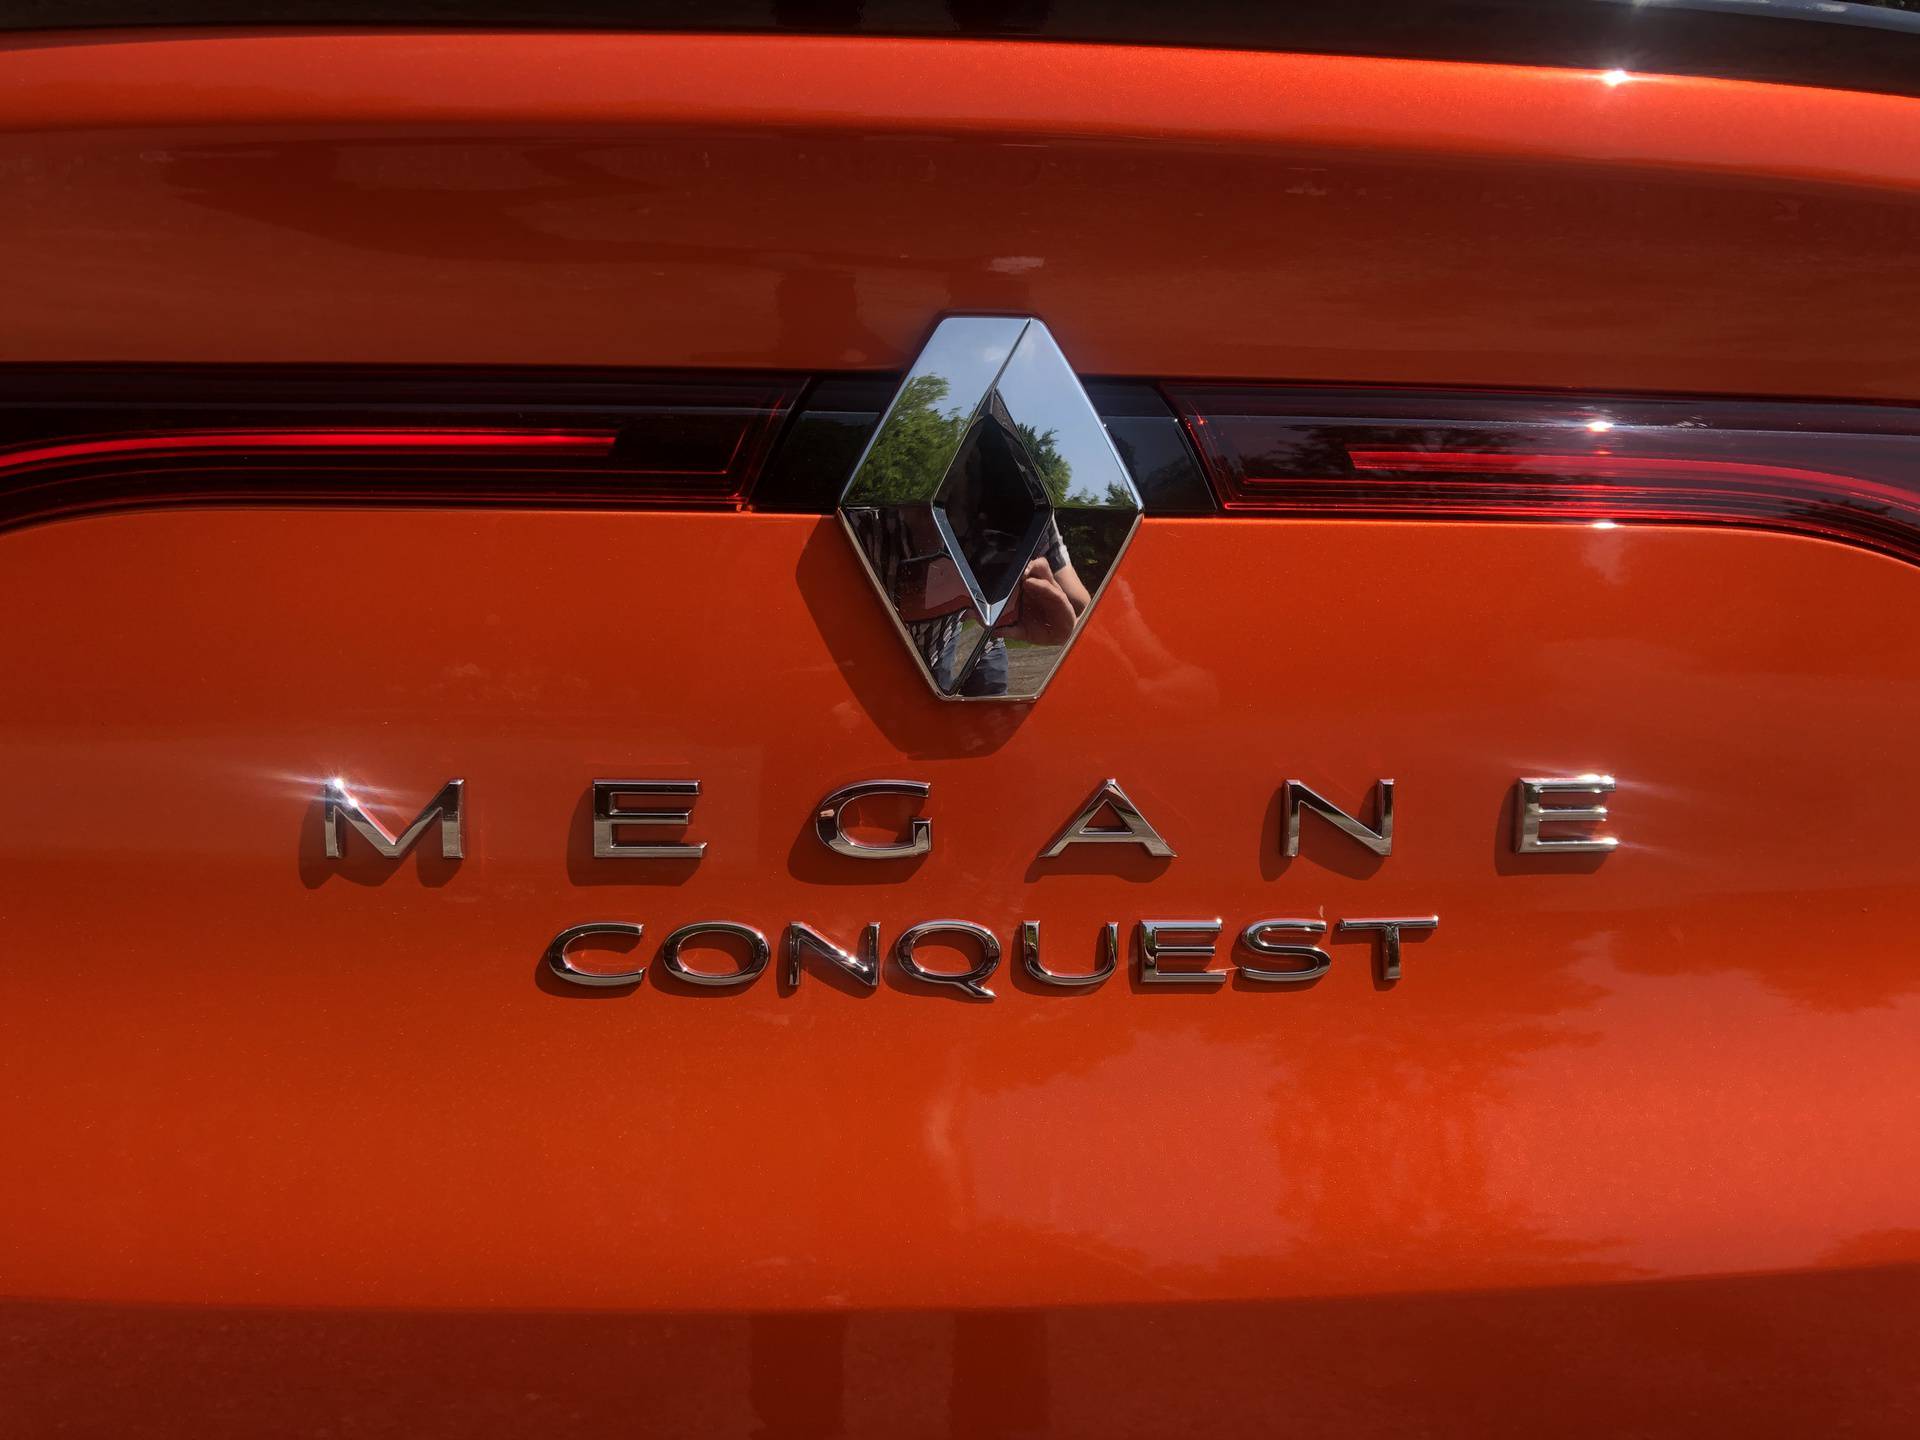 Megane Conquest je odlična kombinacija SUV-a i coupea. Upravo je stigao u Hrvatsku